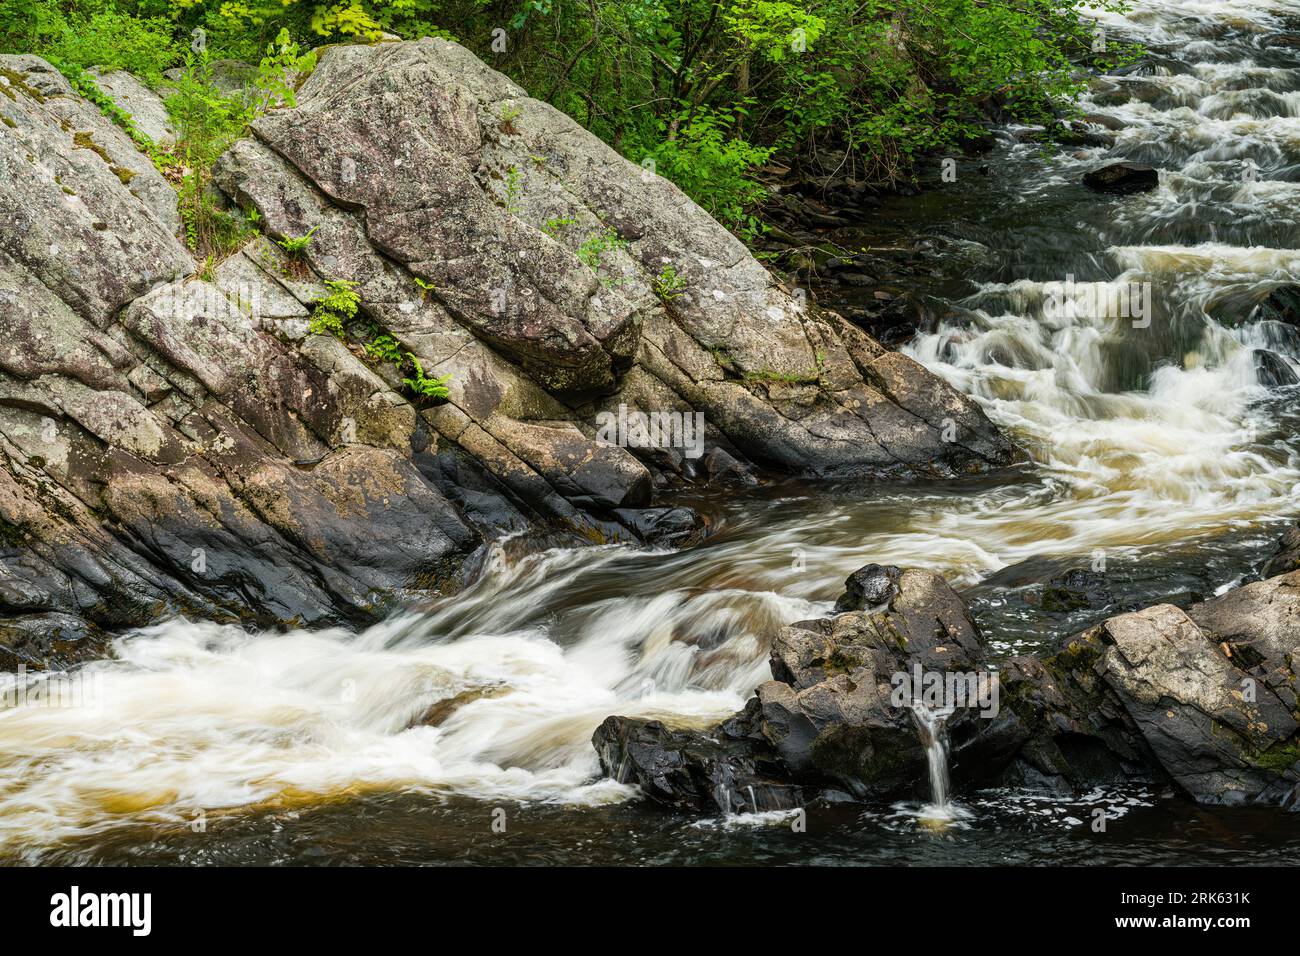 Still River   Riverton, Connecticut, USA Stock Photo